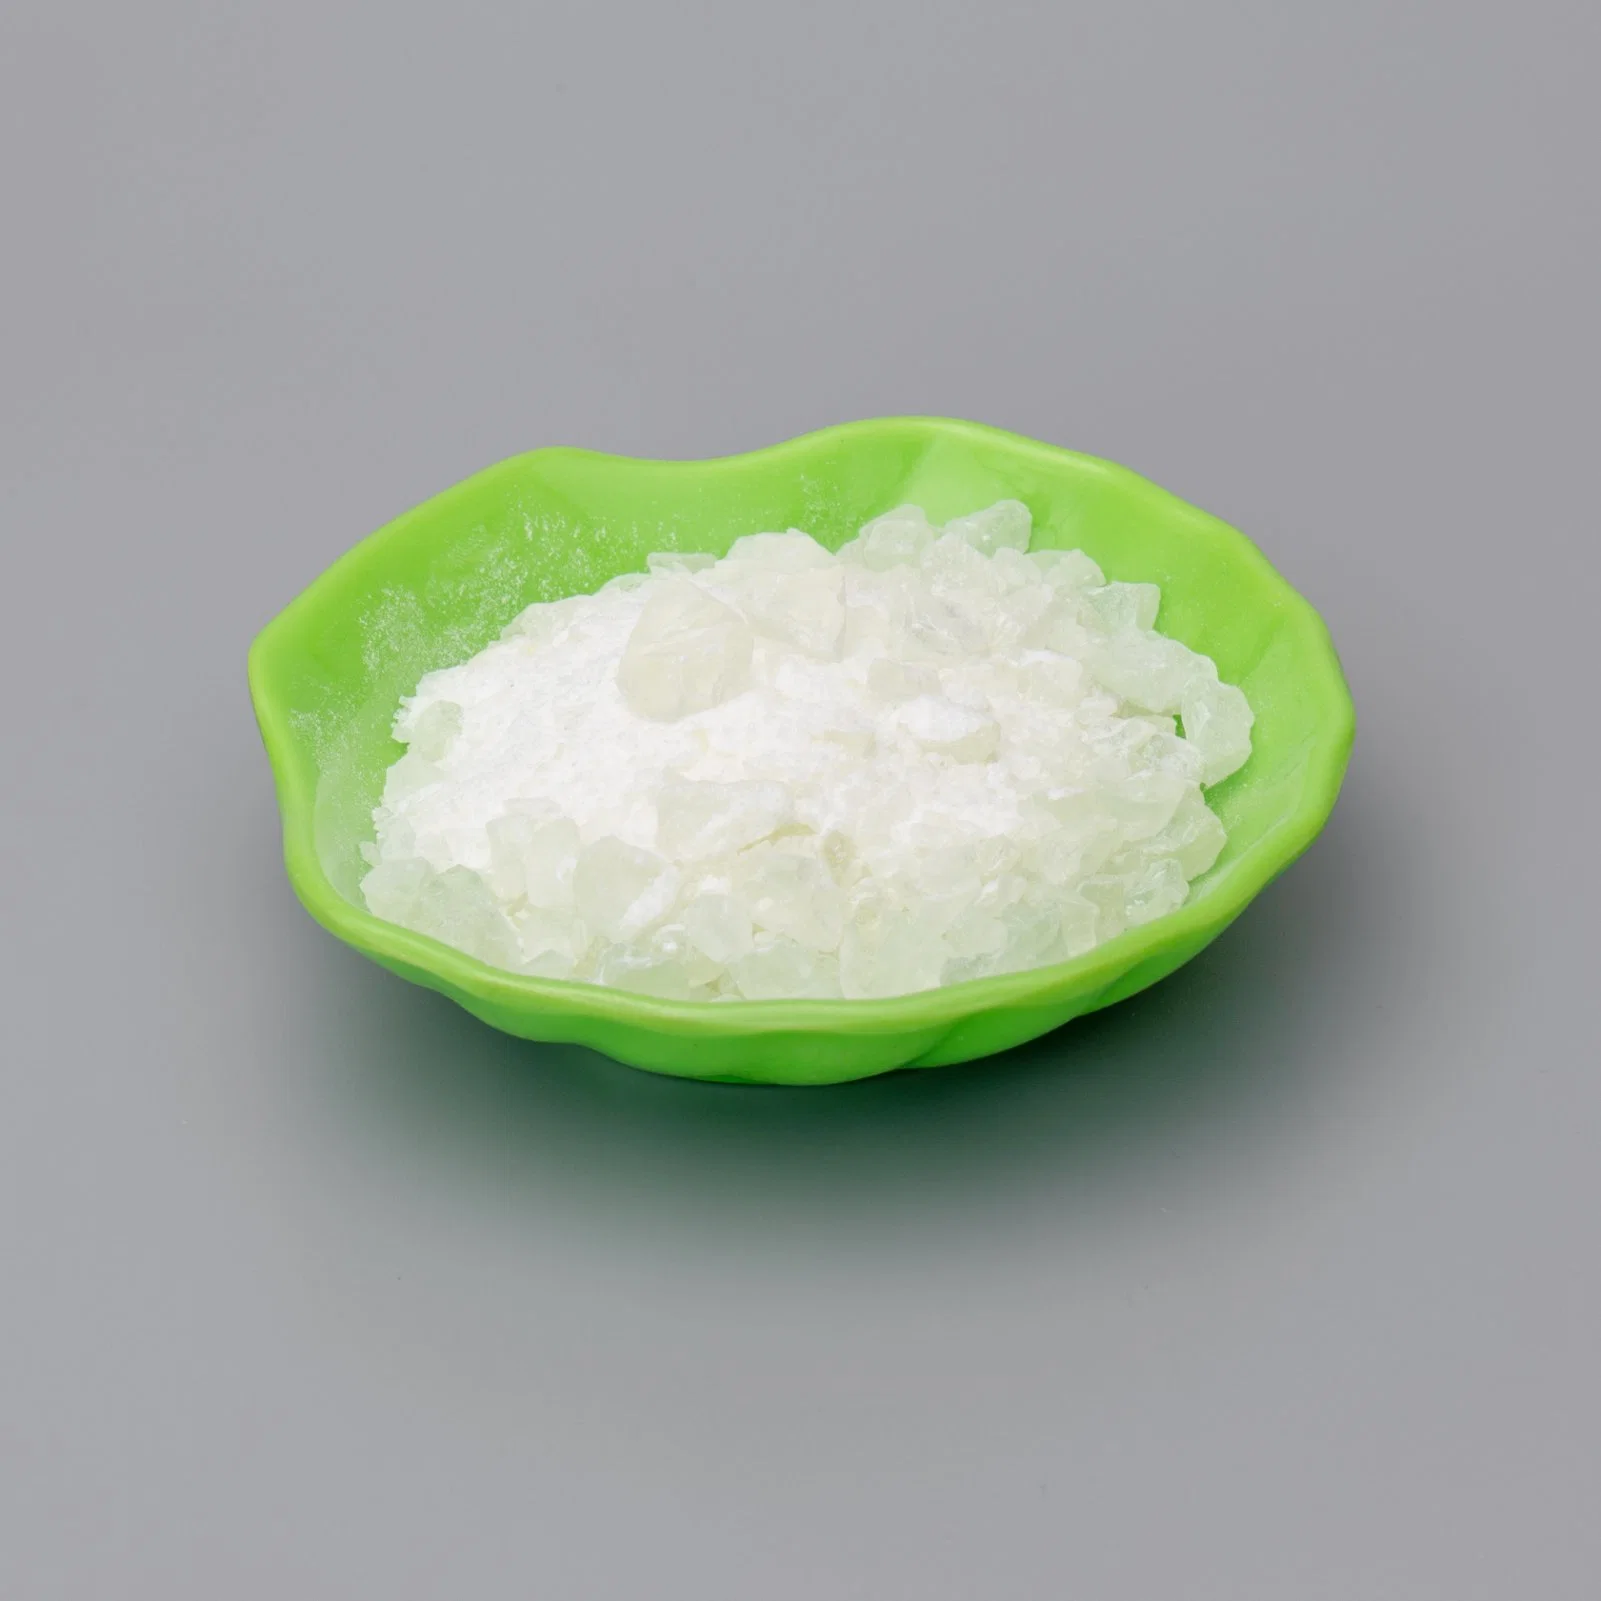 Polyketone Resin (Poly-Ketone Resin ketone resin)